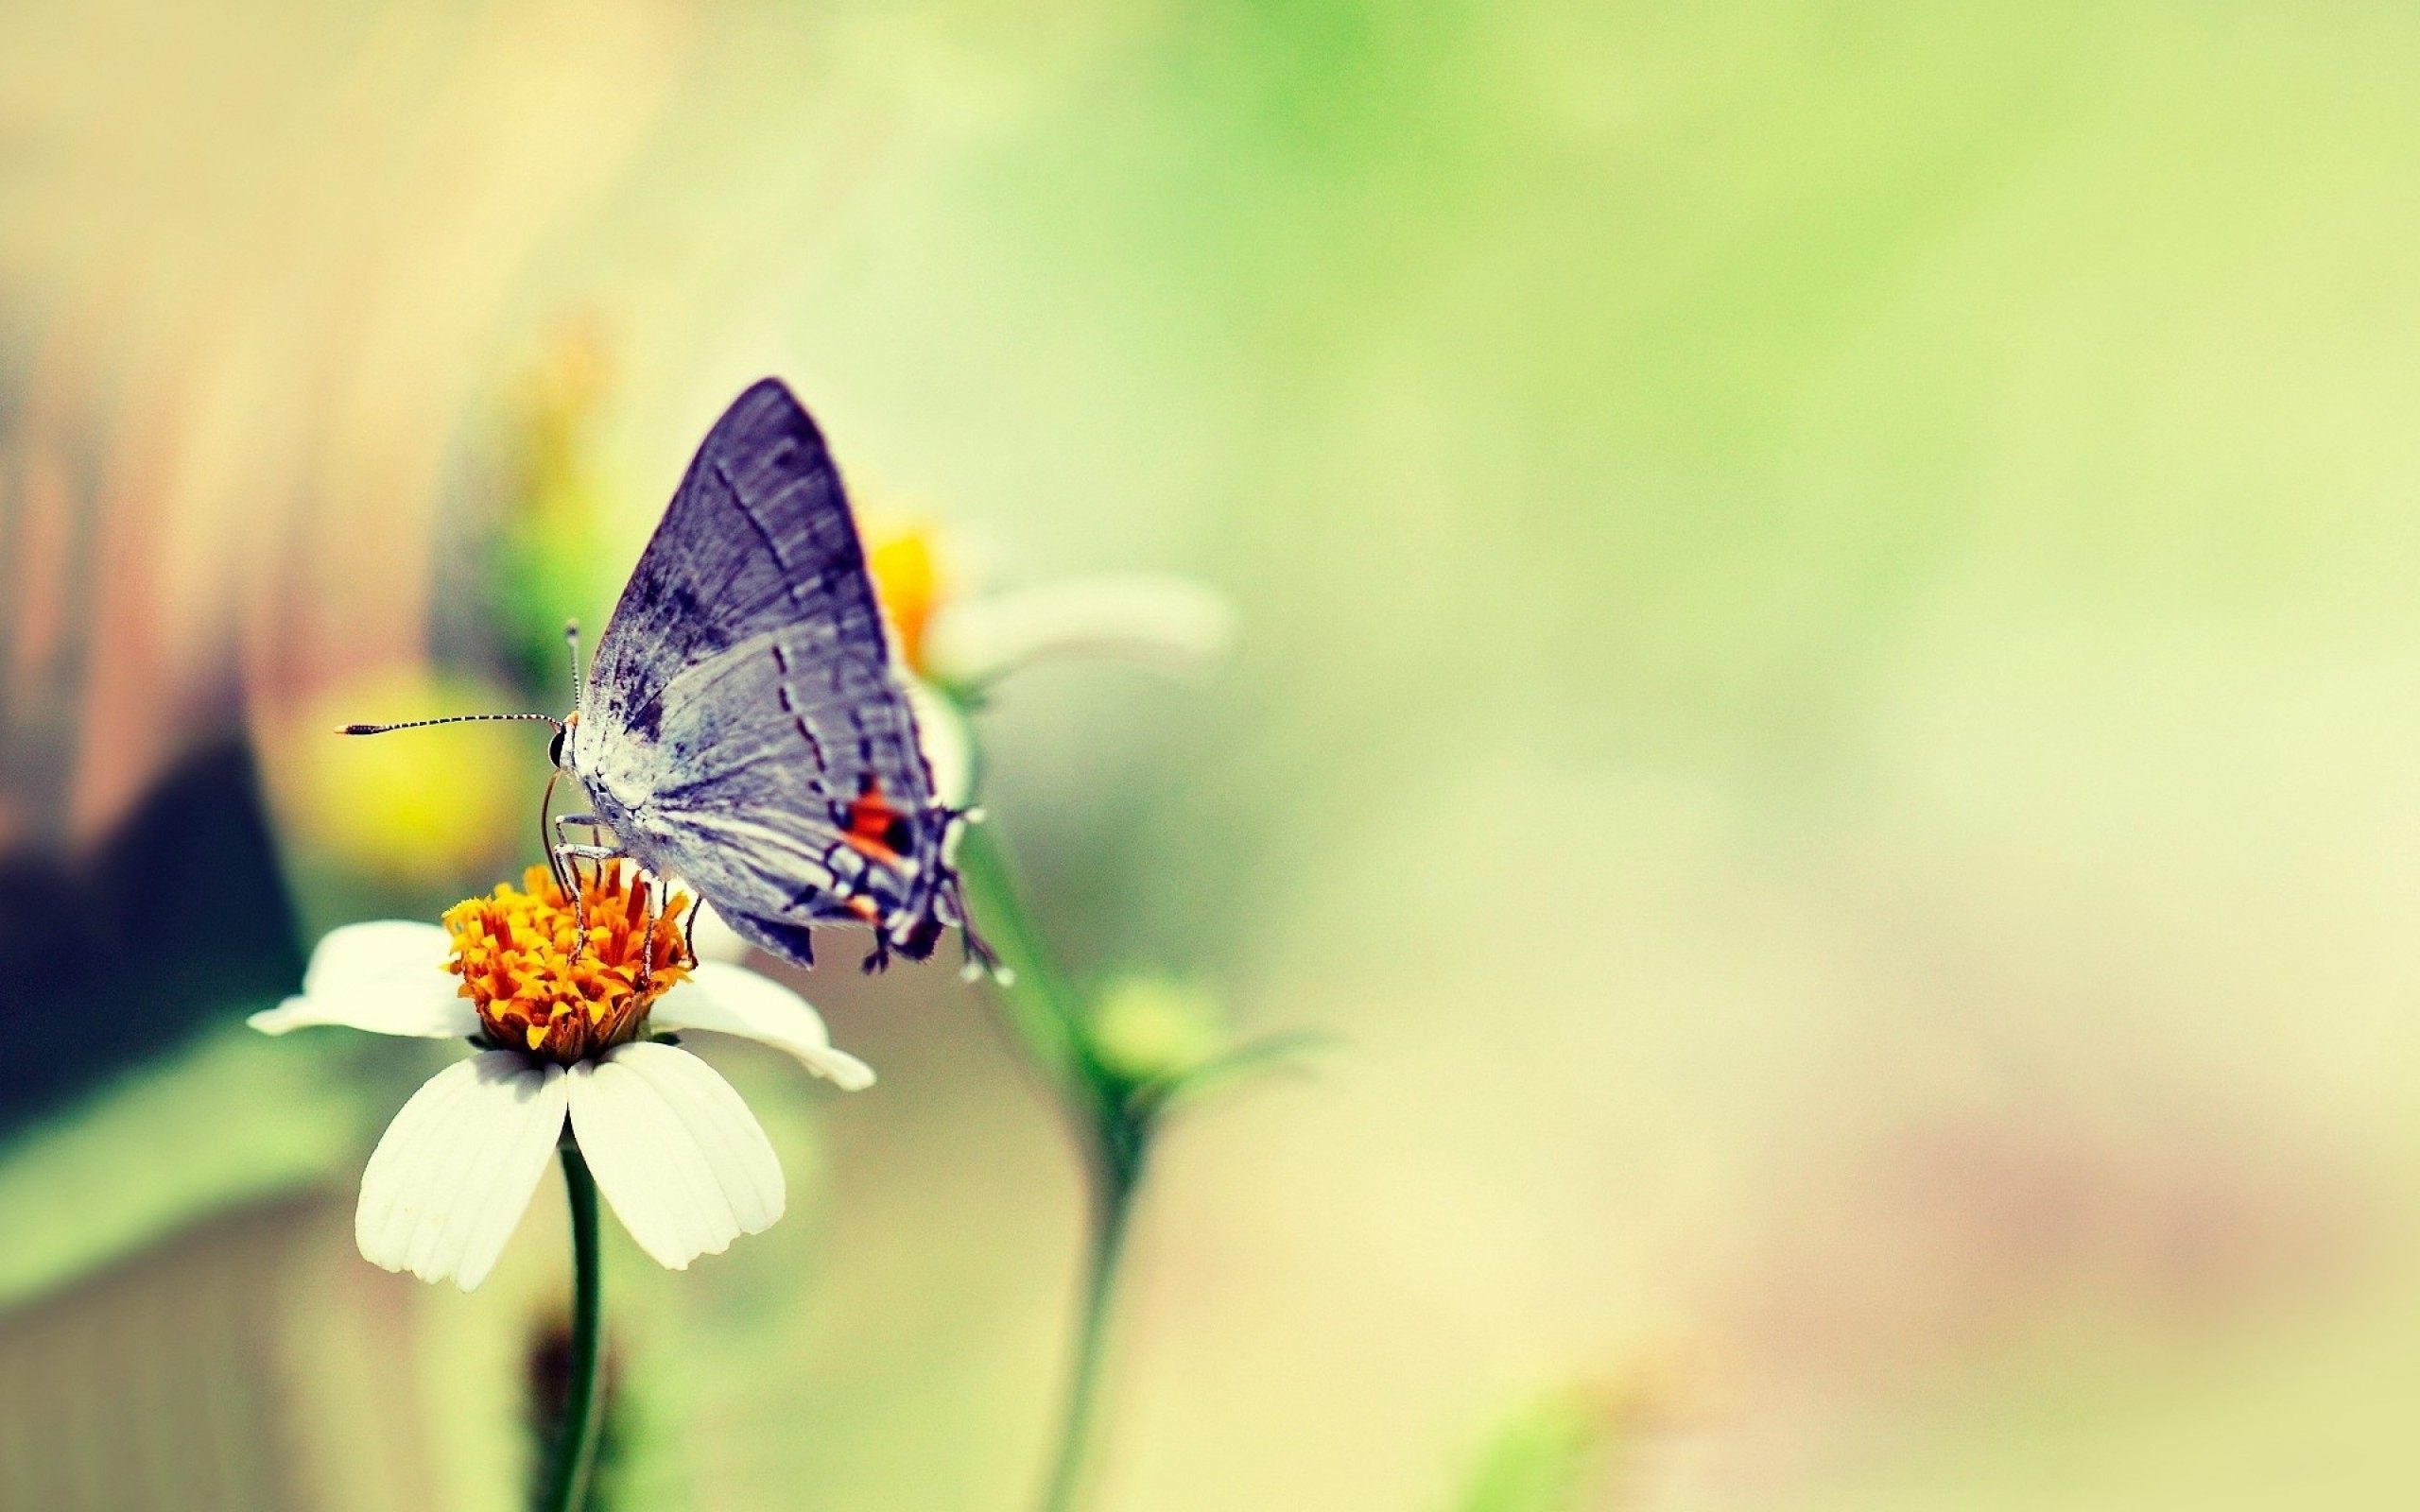 Butterfly-On-Flower-Wallpaper.